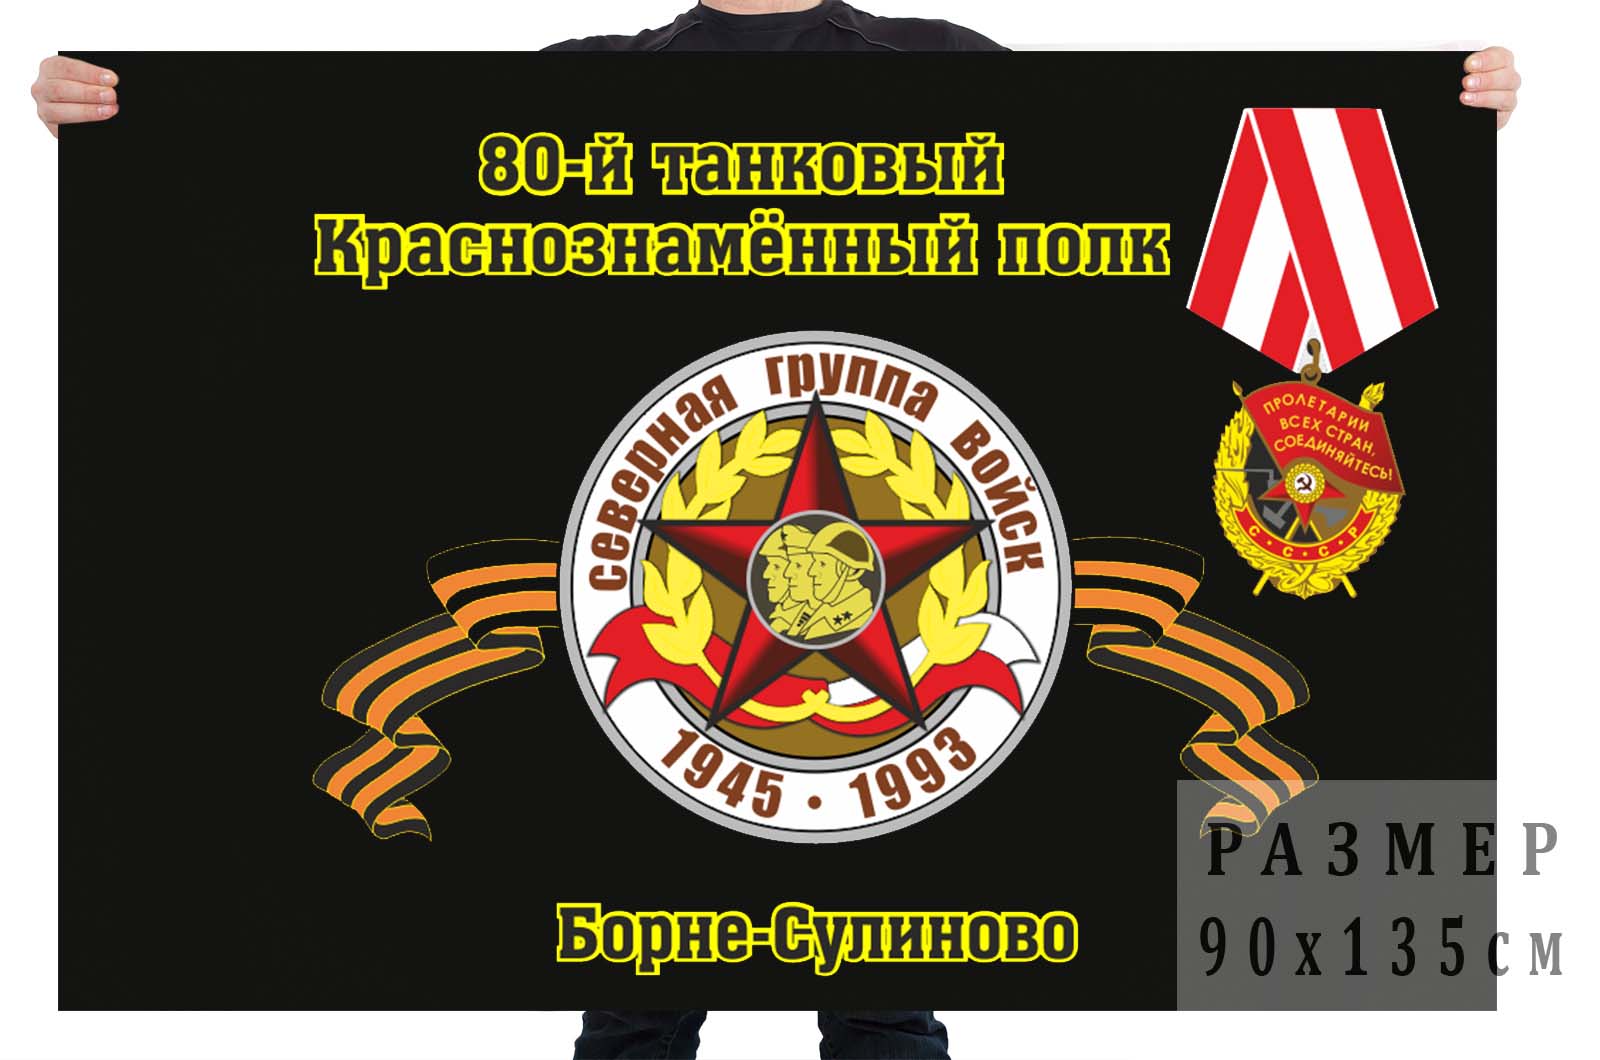 Флаг "80-й танковый Краснознамённый полк. Борне-Сулиново"